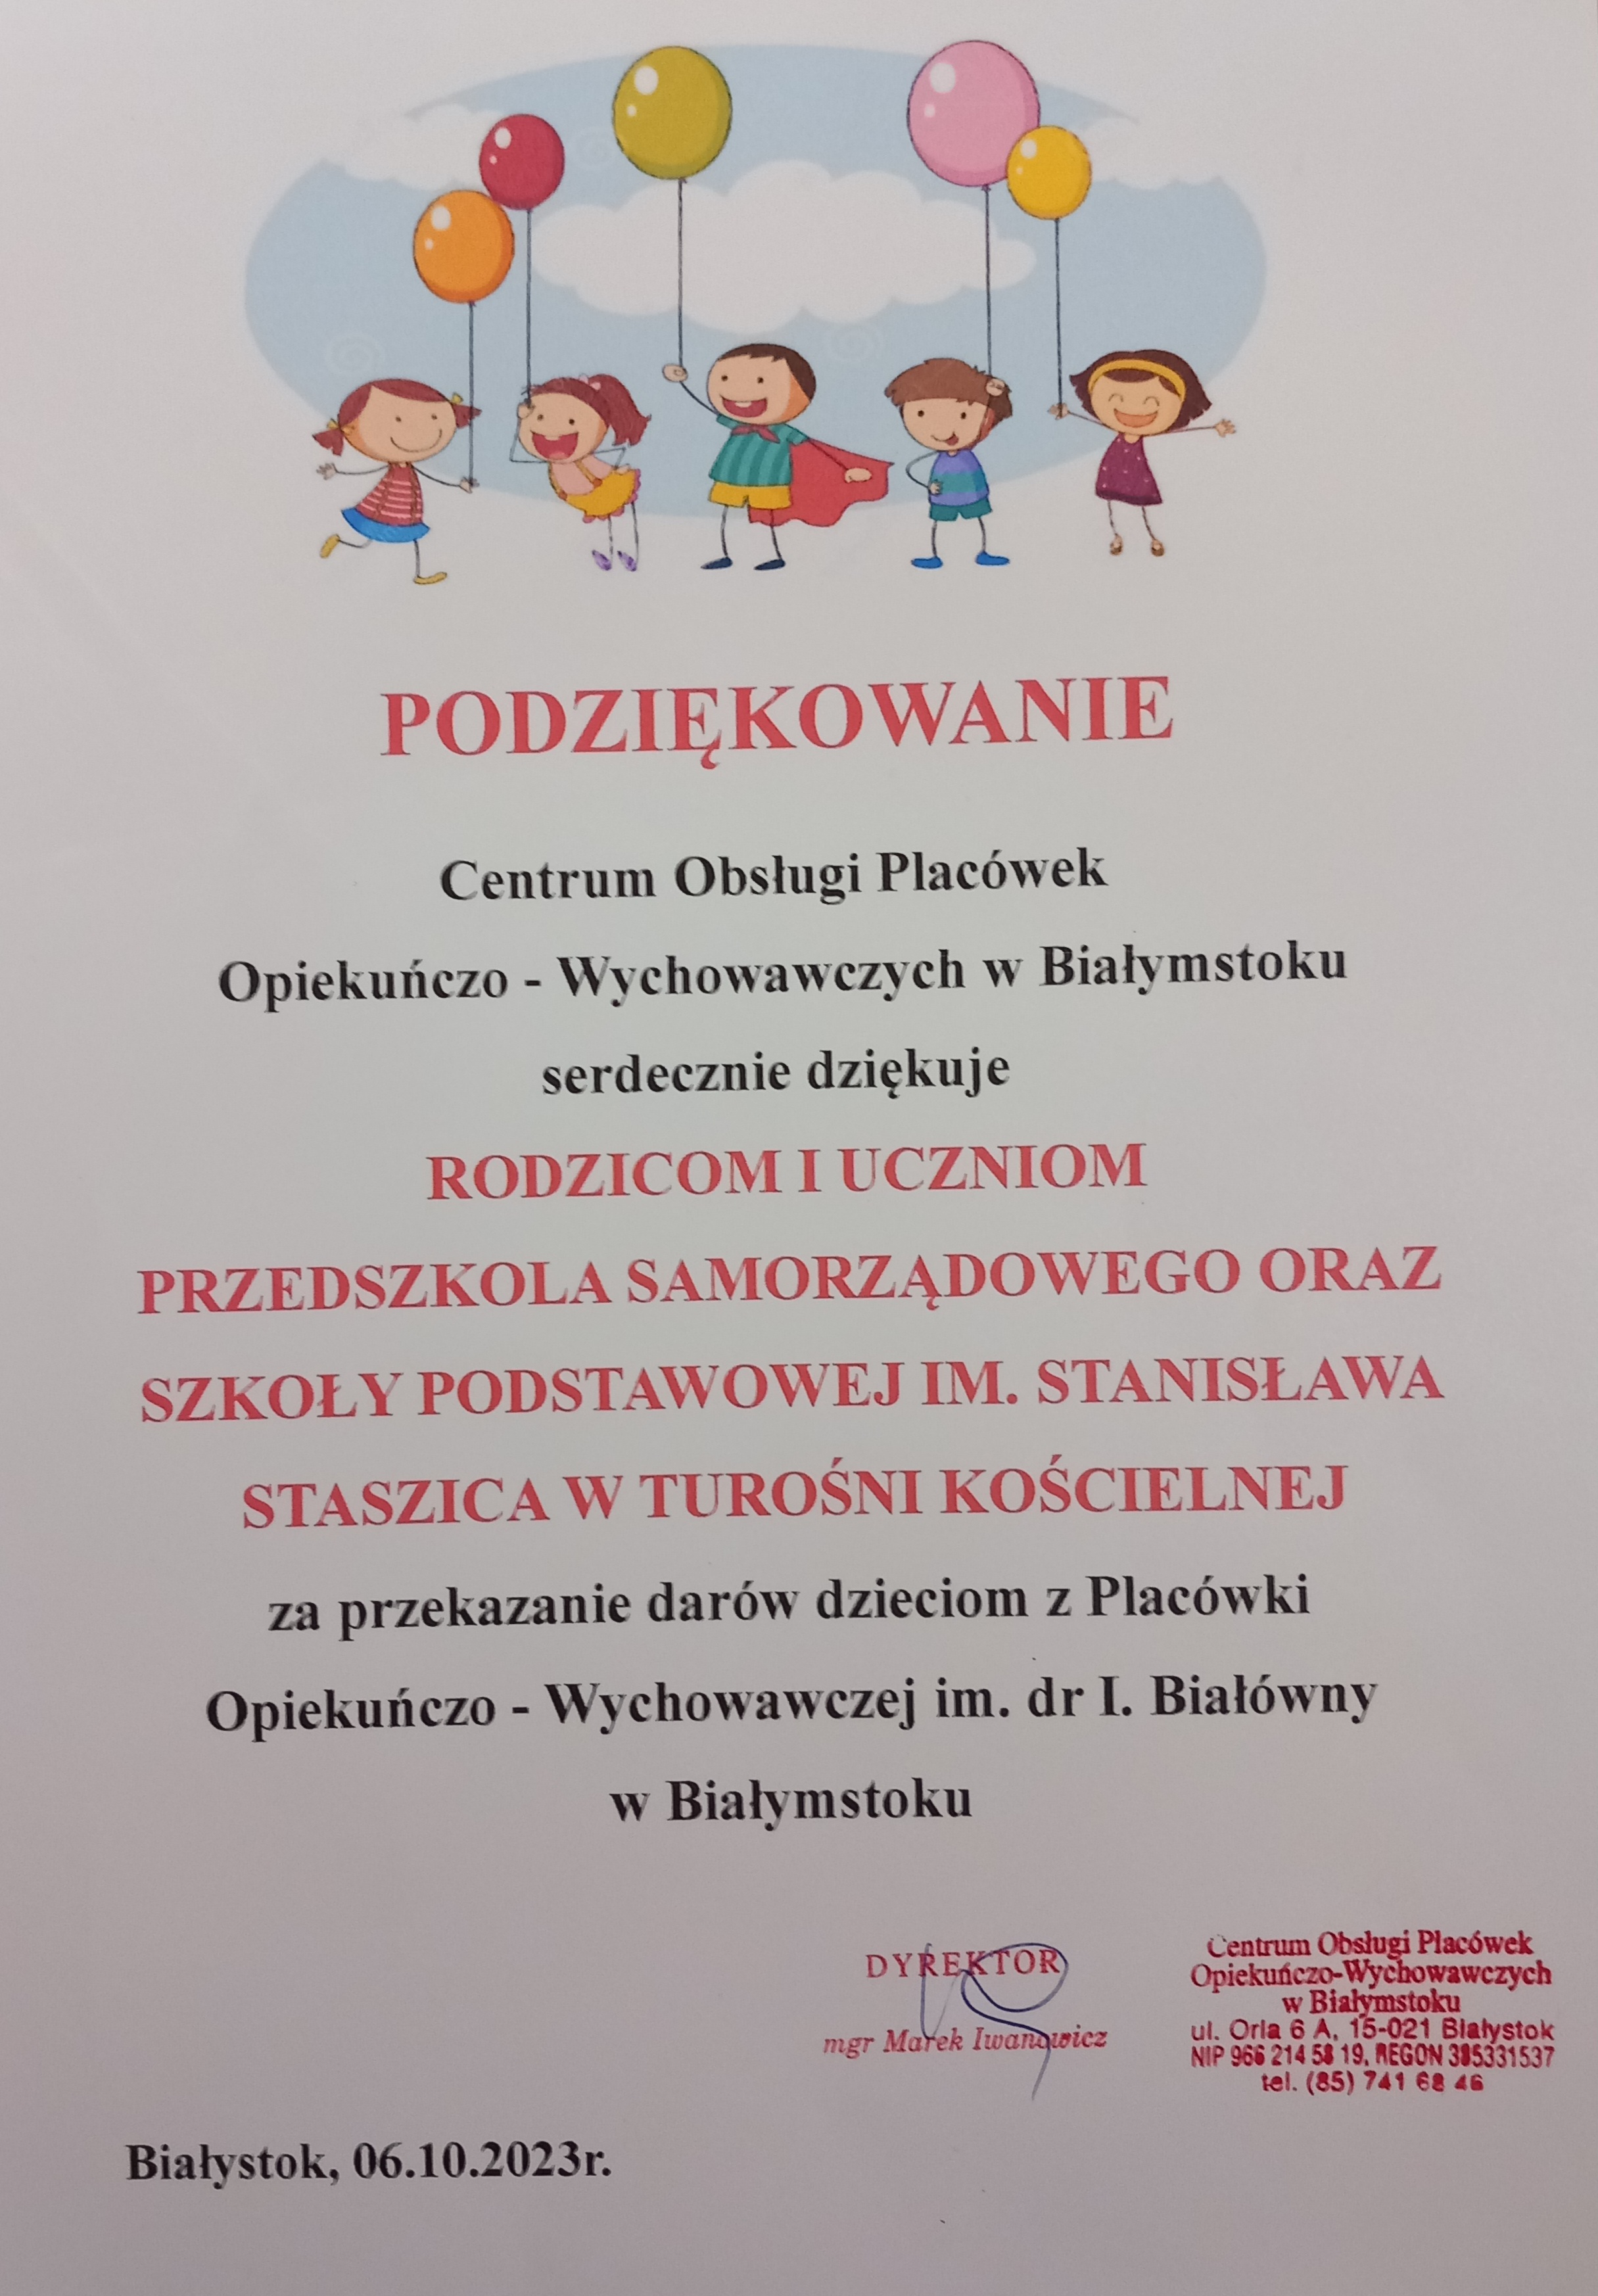 Podziękowanie od Centrum Obsługi Placówek Opiekuńczo Wychowawczych w Białymstoku